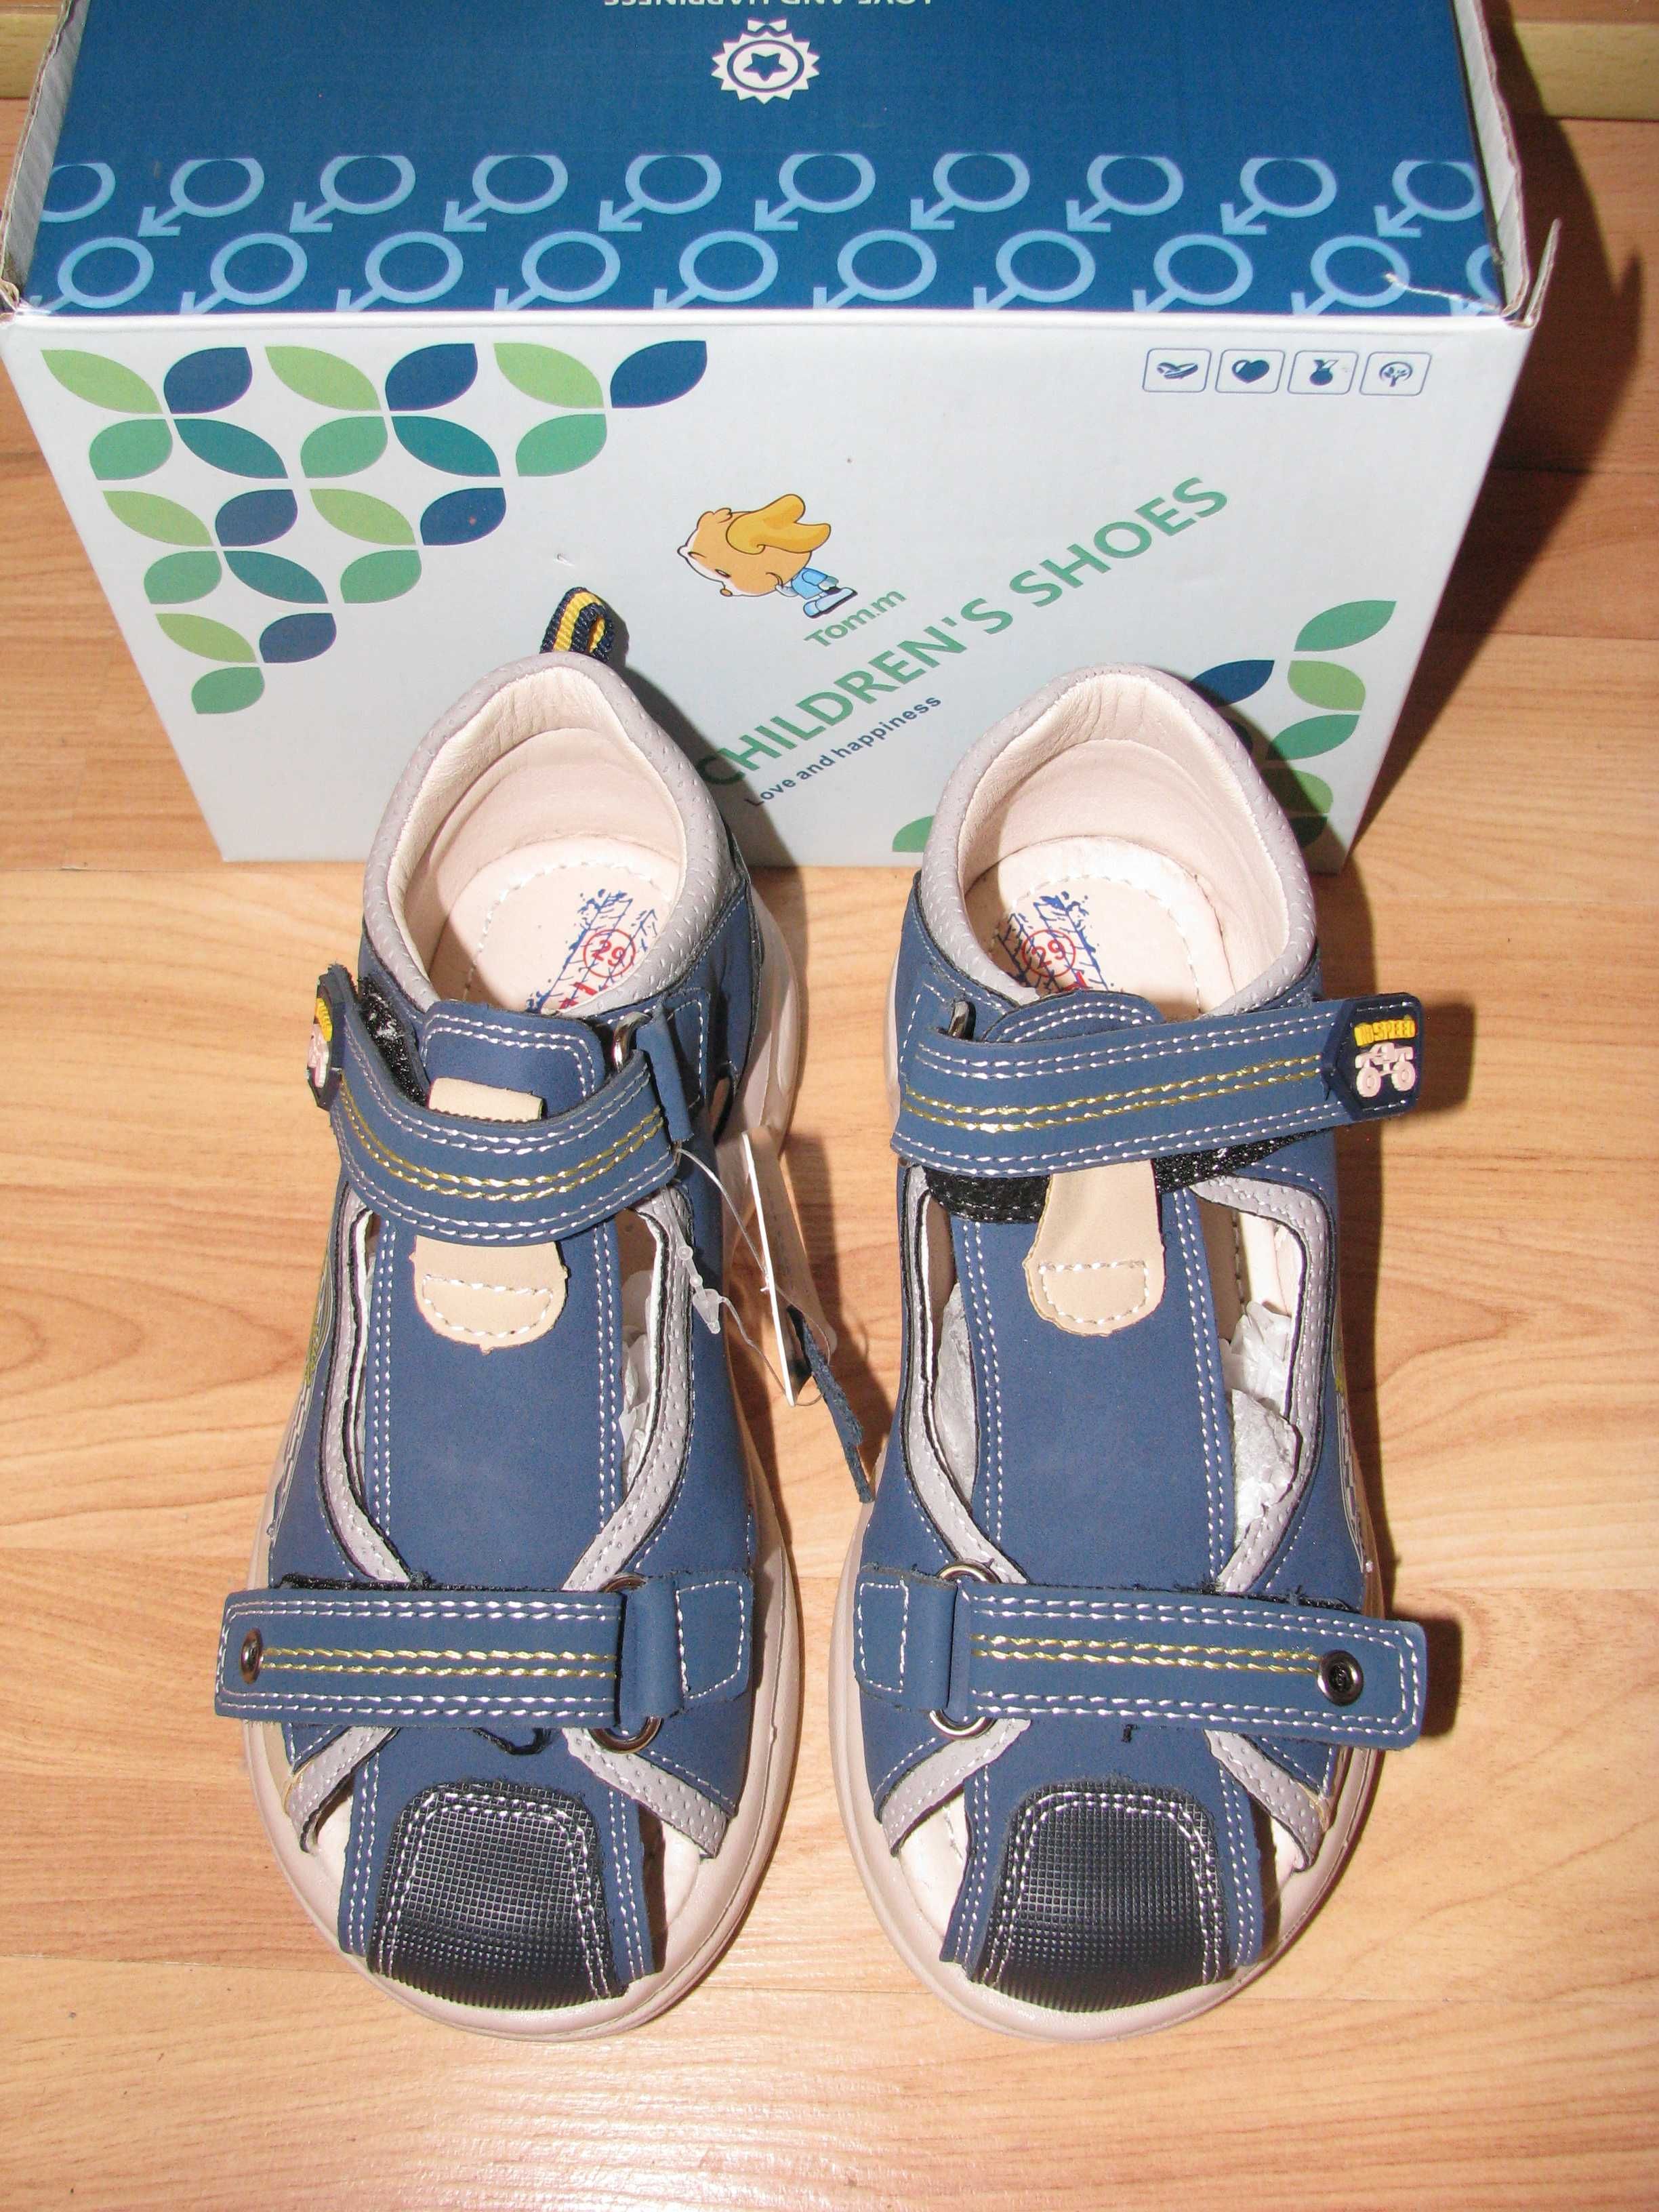 Продам новые ортопедические сандали Tom.m 29 размера для мальчика